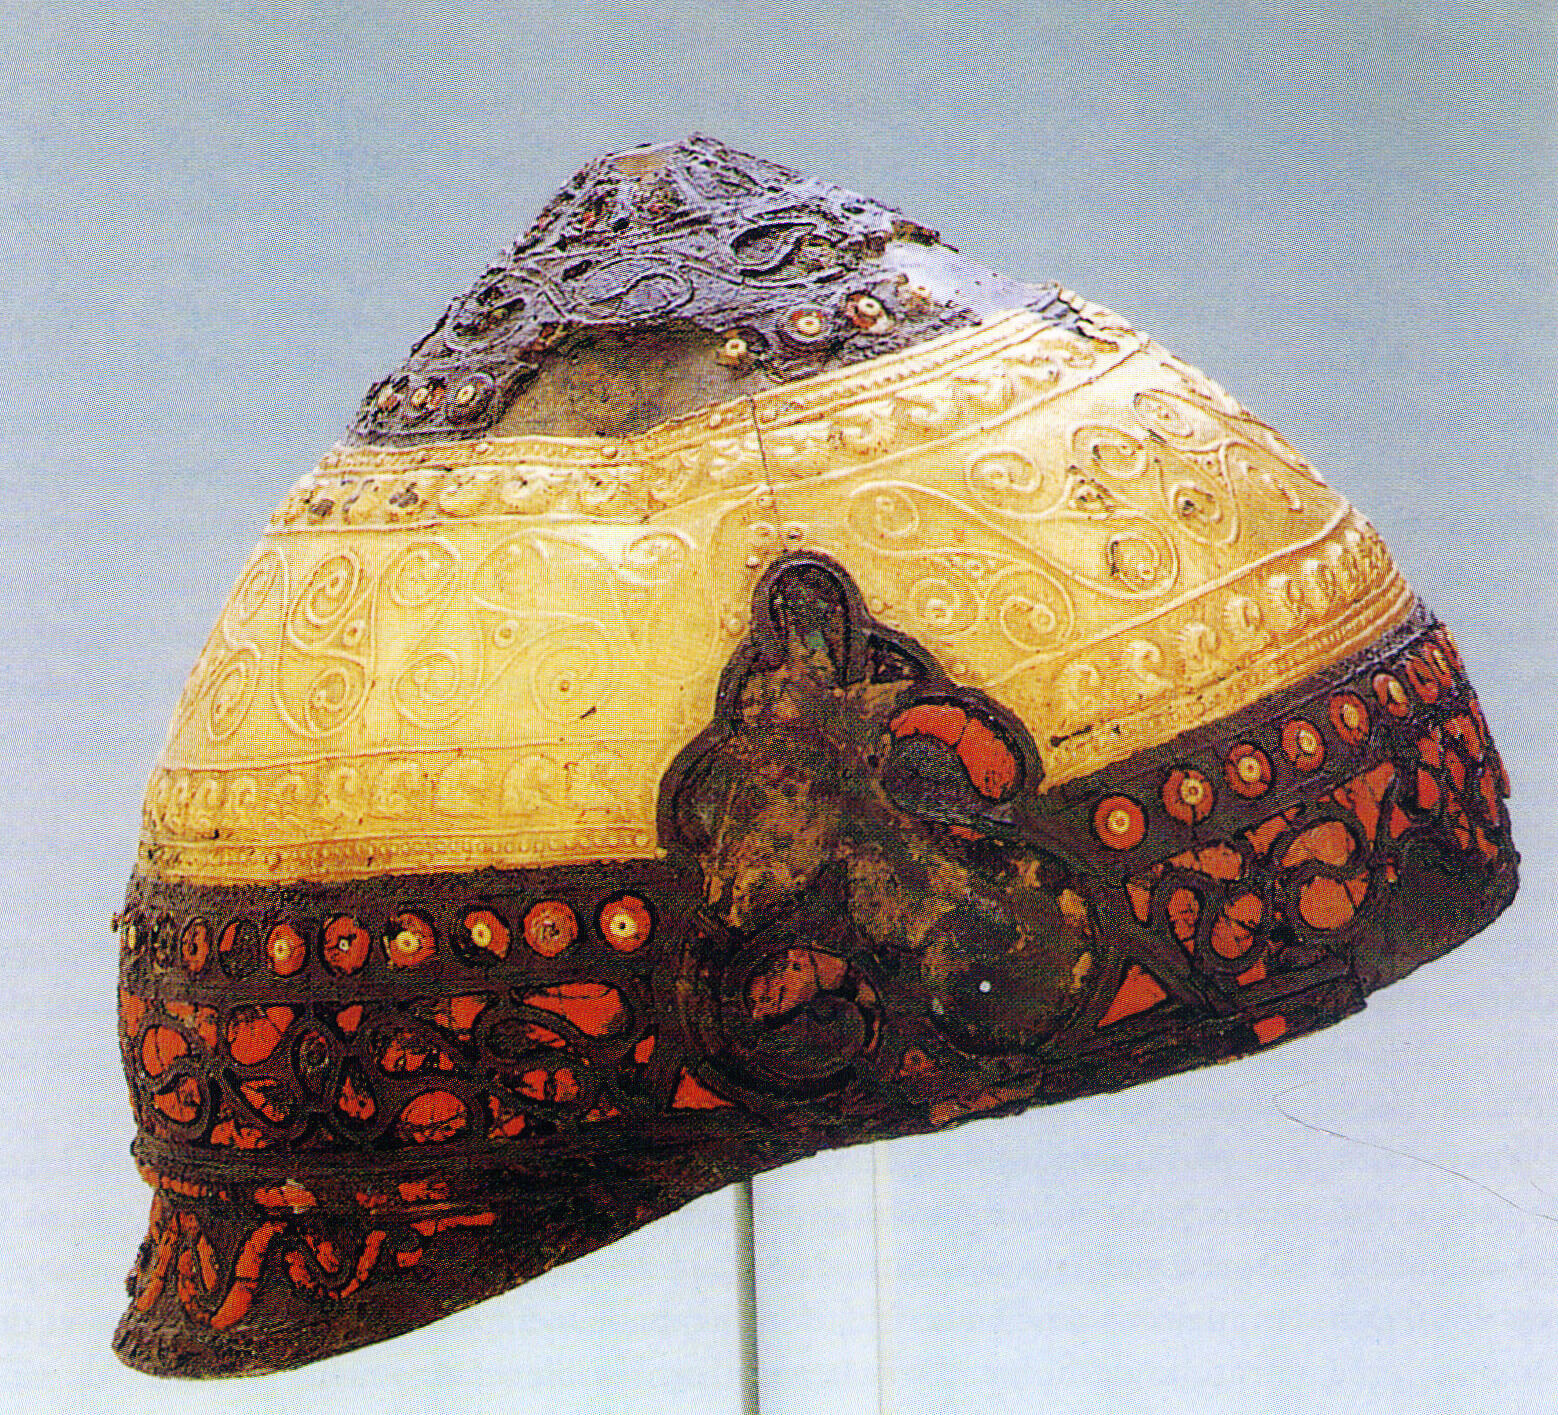 Helm celtycki zdobiony zlotem i czerwona emalia